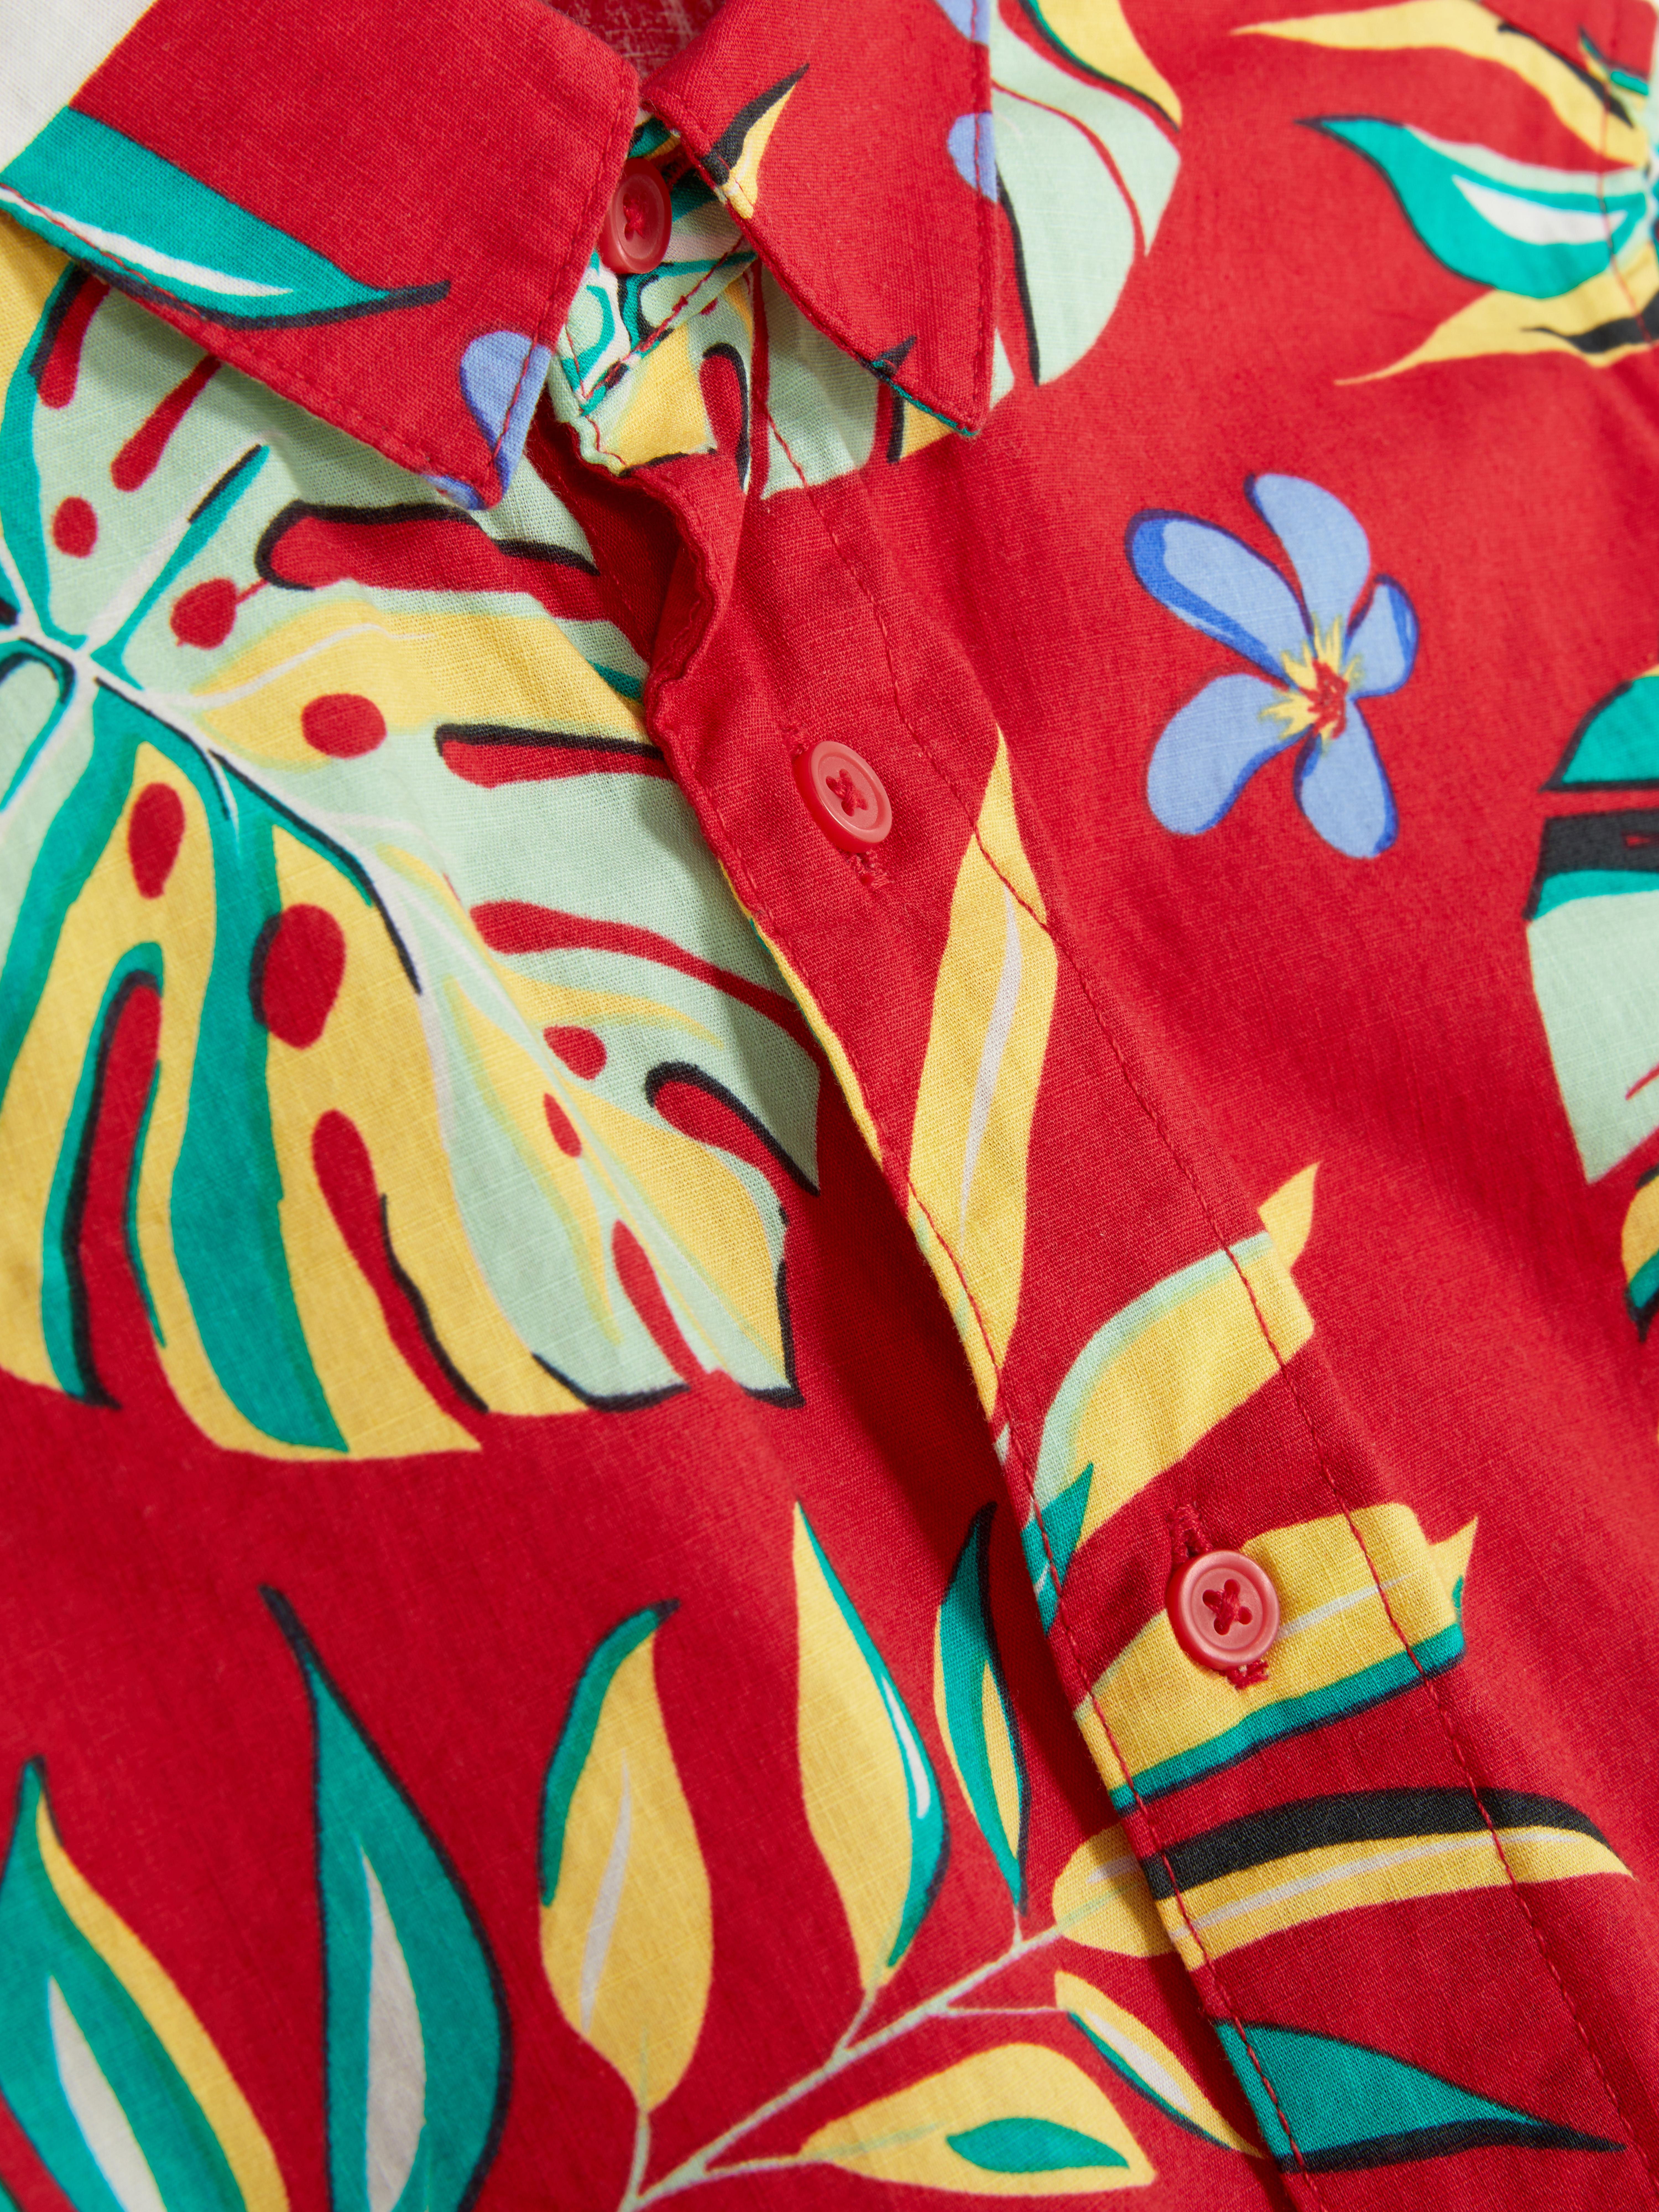 Camisa hawaiana estampado de hojas | Primark